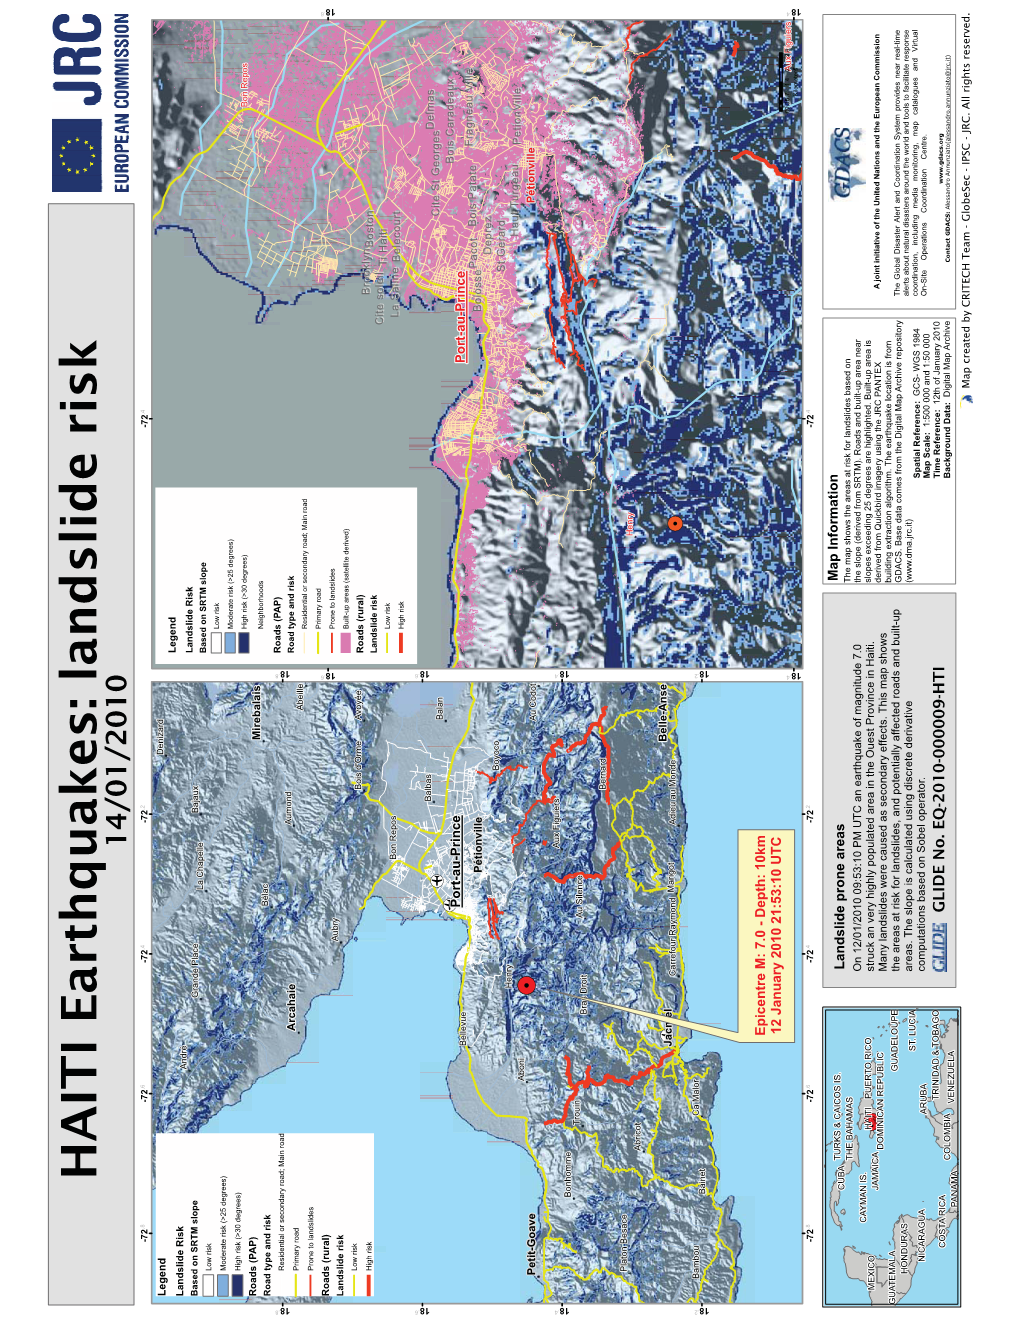 HAITI Earthquakes: Landslide Risk 14/01/2010